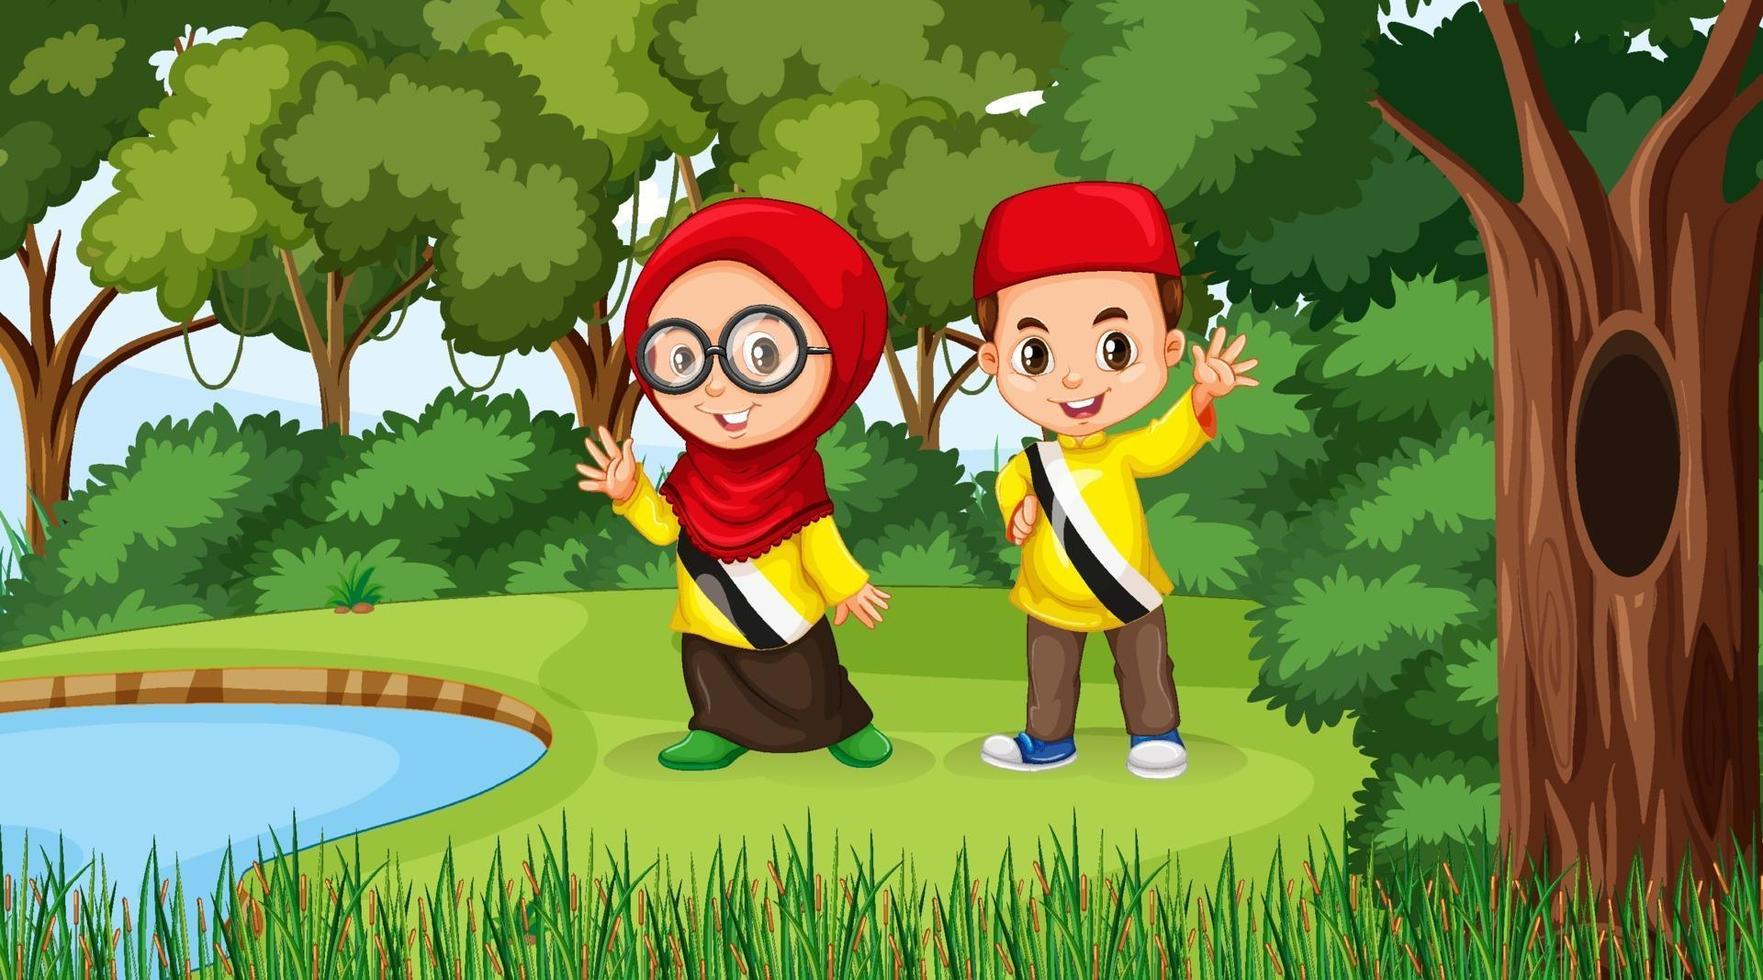 Brunei Kids trägt traditionelle Kleidung in der Waldszene vektor